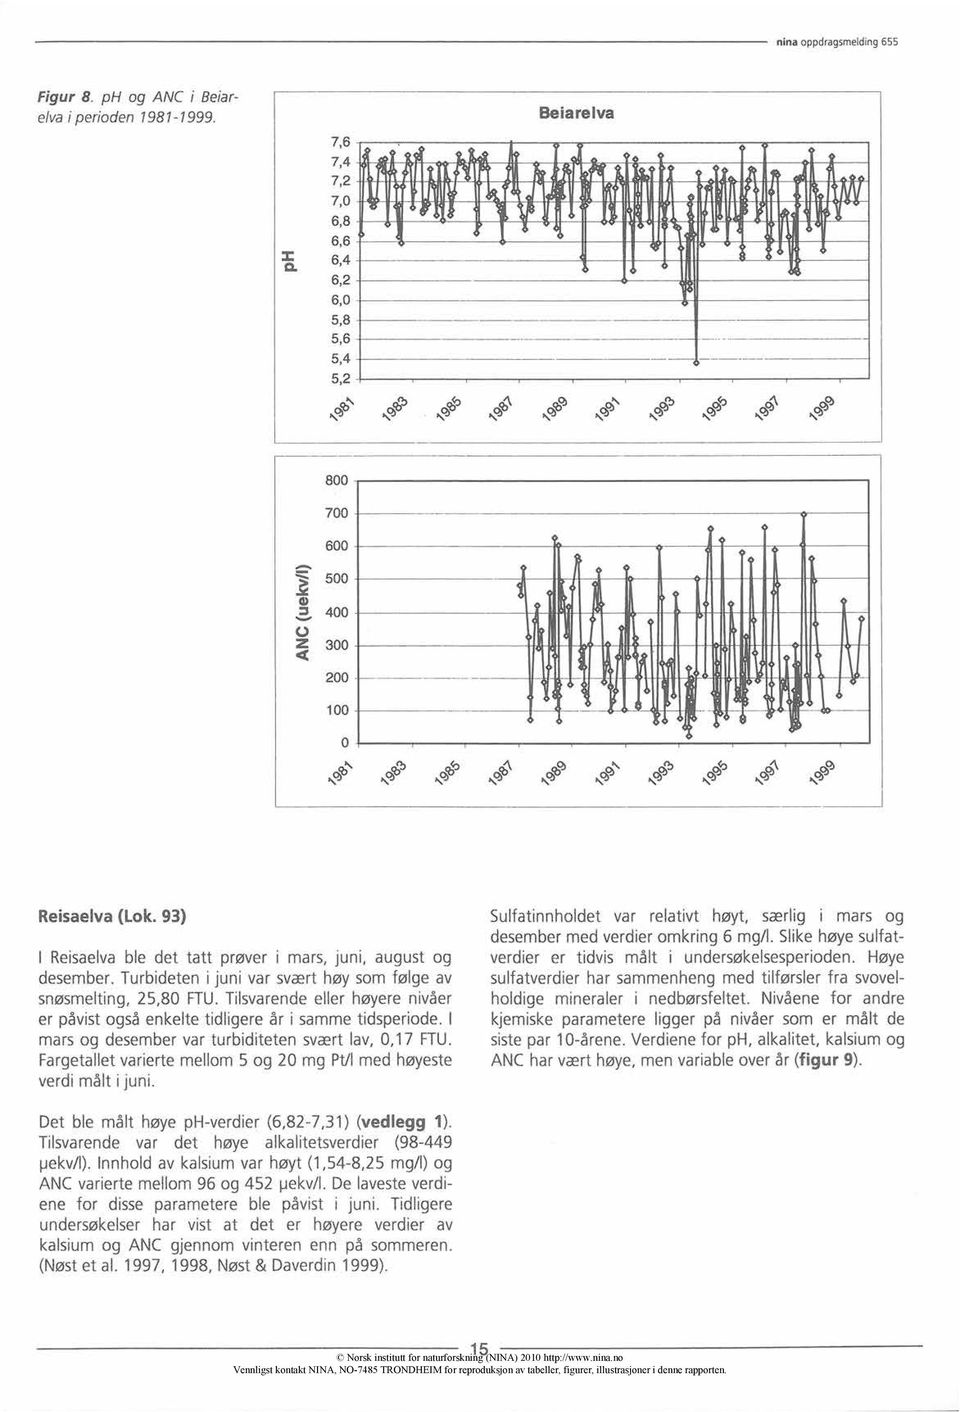 Tilsvarende eller høyere nivåer er påvist også enkelte tidligere år i samme tidsperiode. I mars og desember var turbiditeten svært lav, 0,17 FTU.